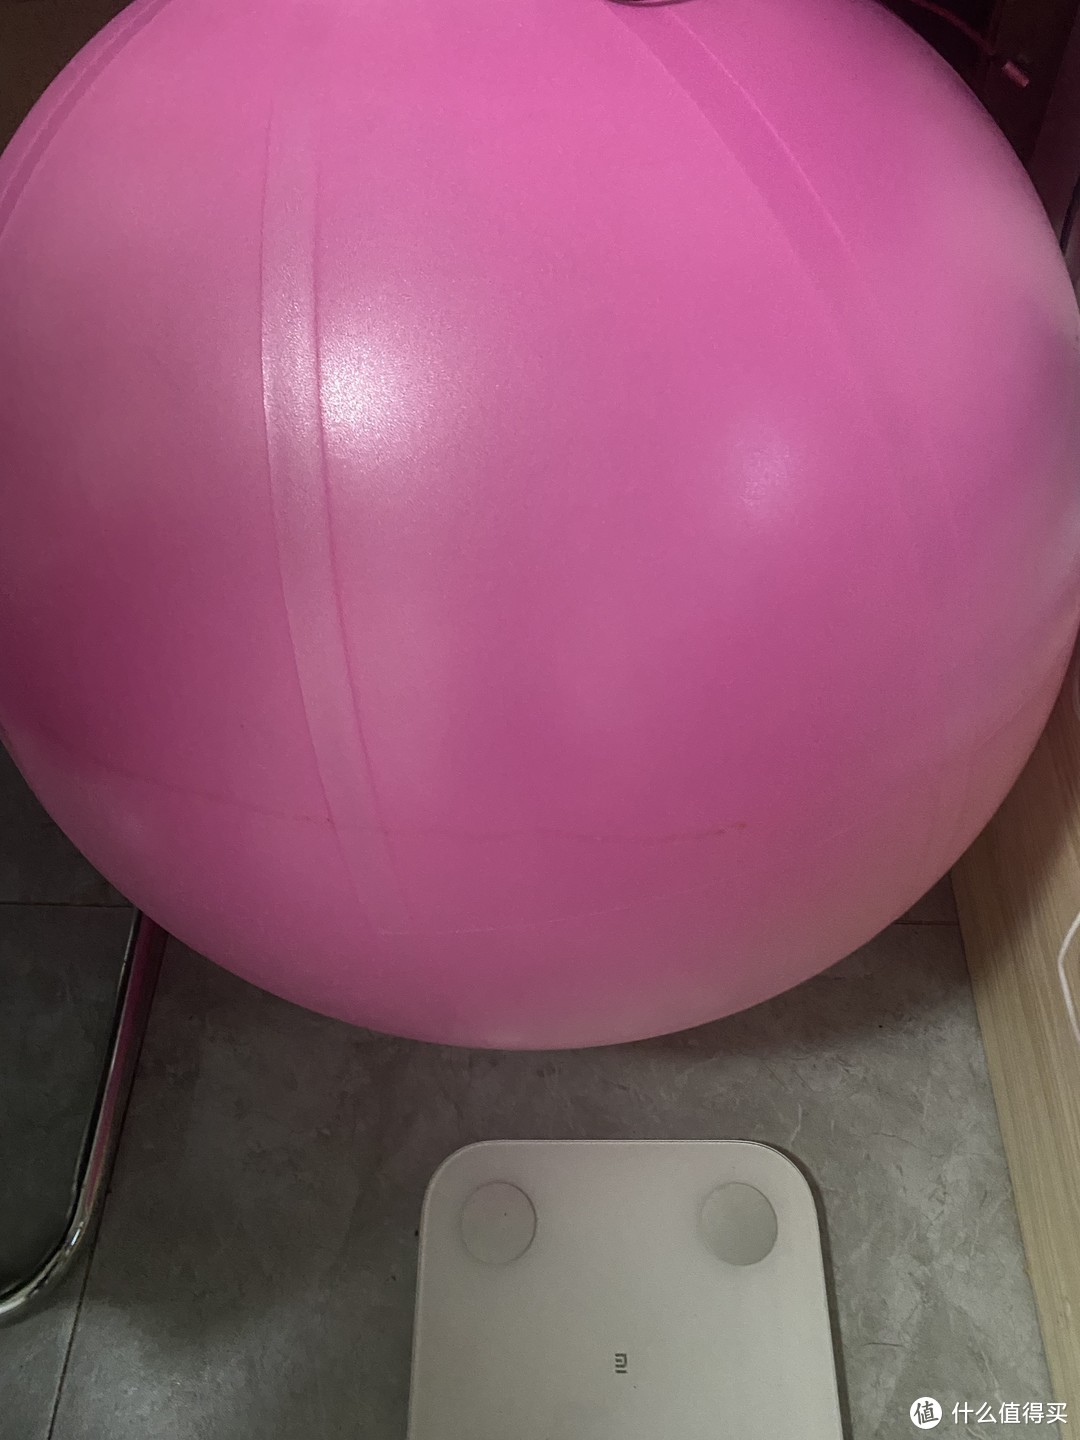 家用健身器材分享 | 瑜伽球